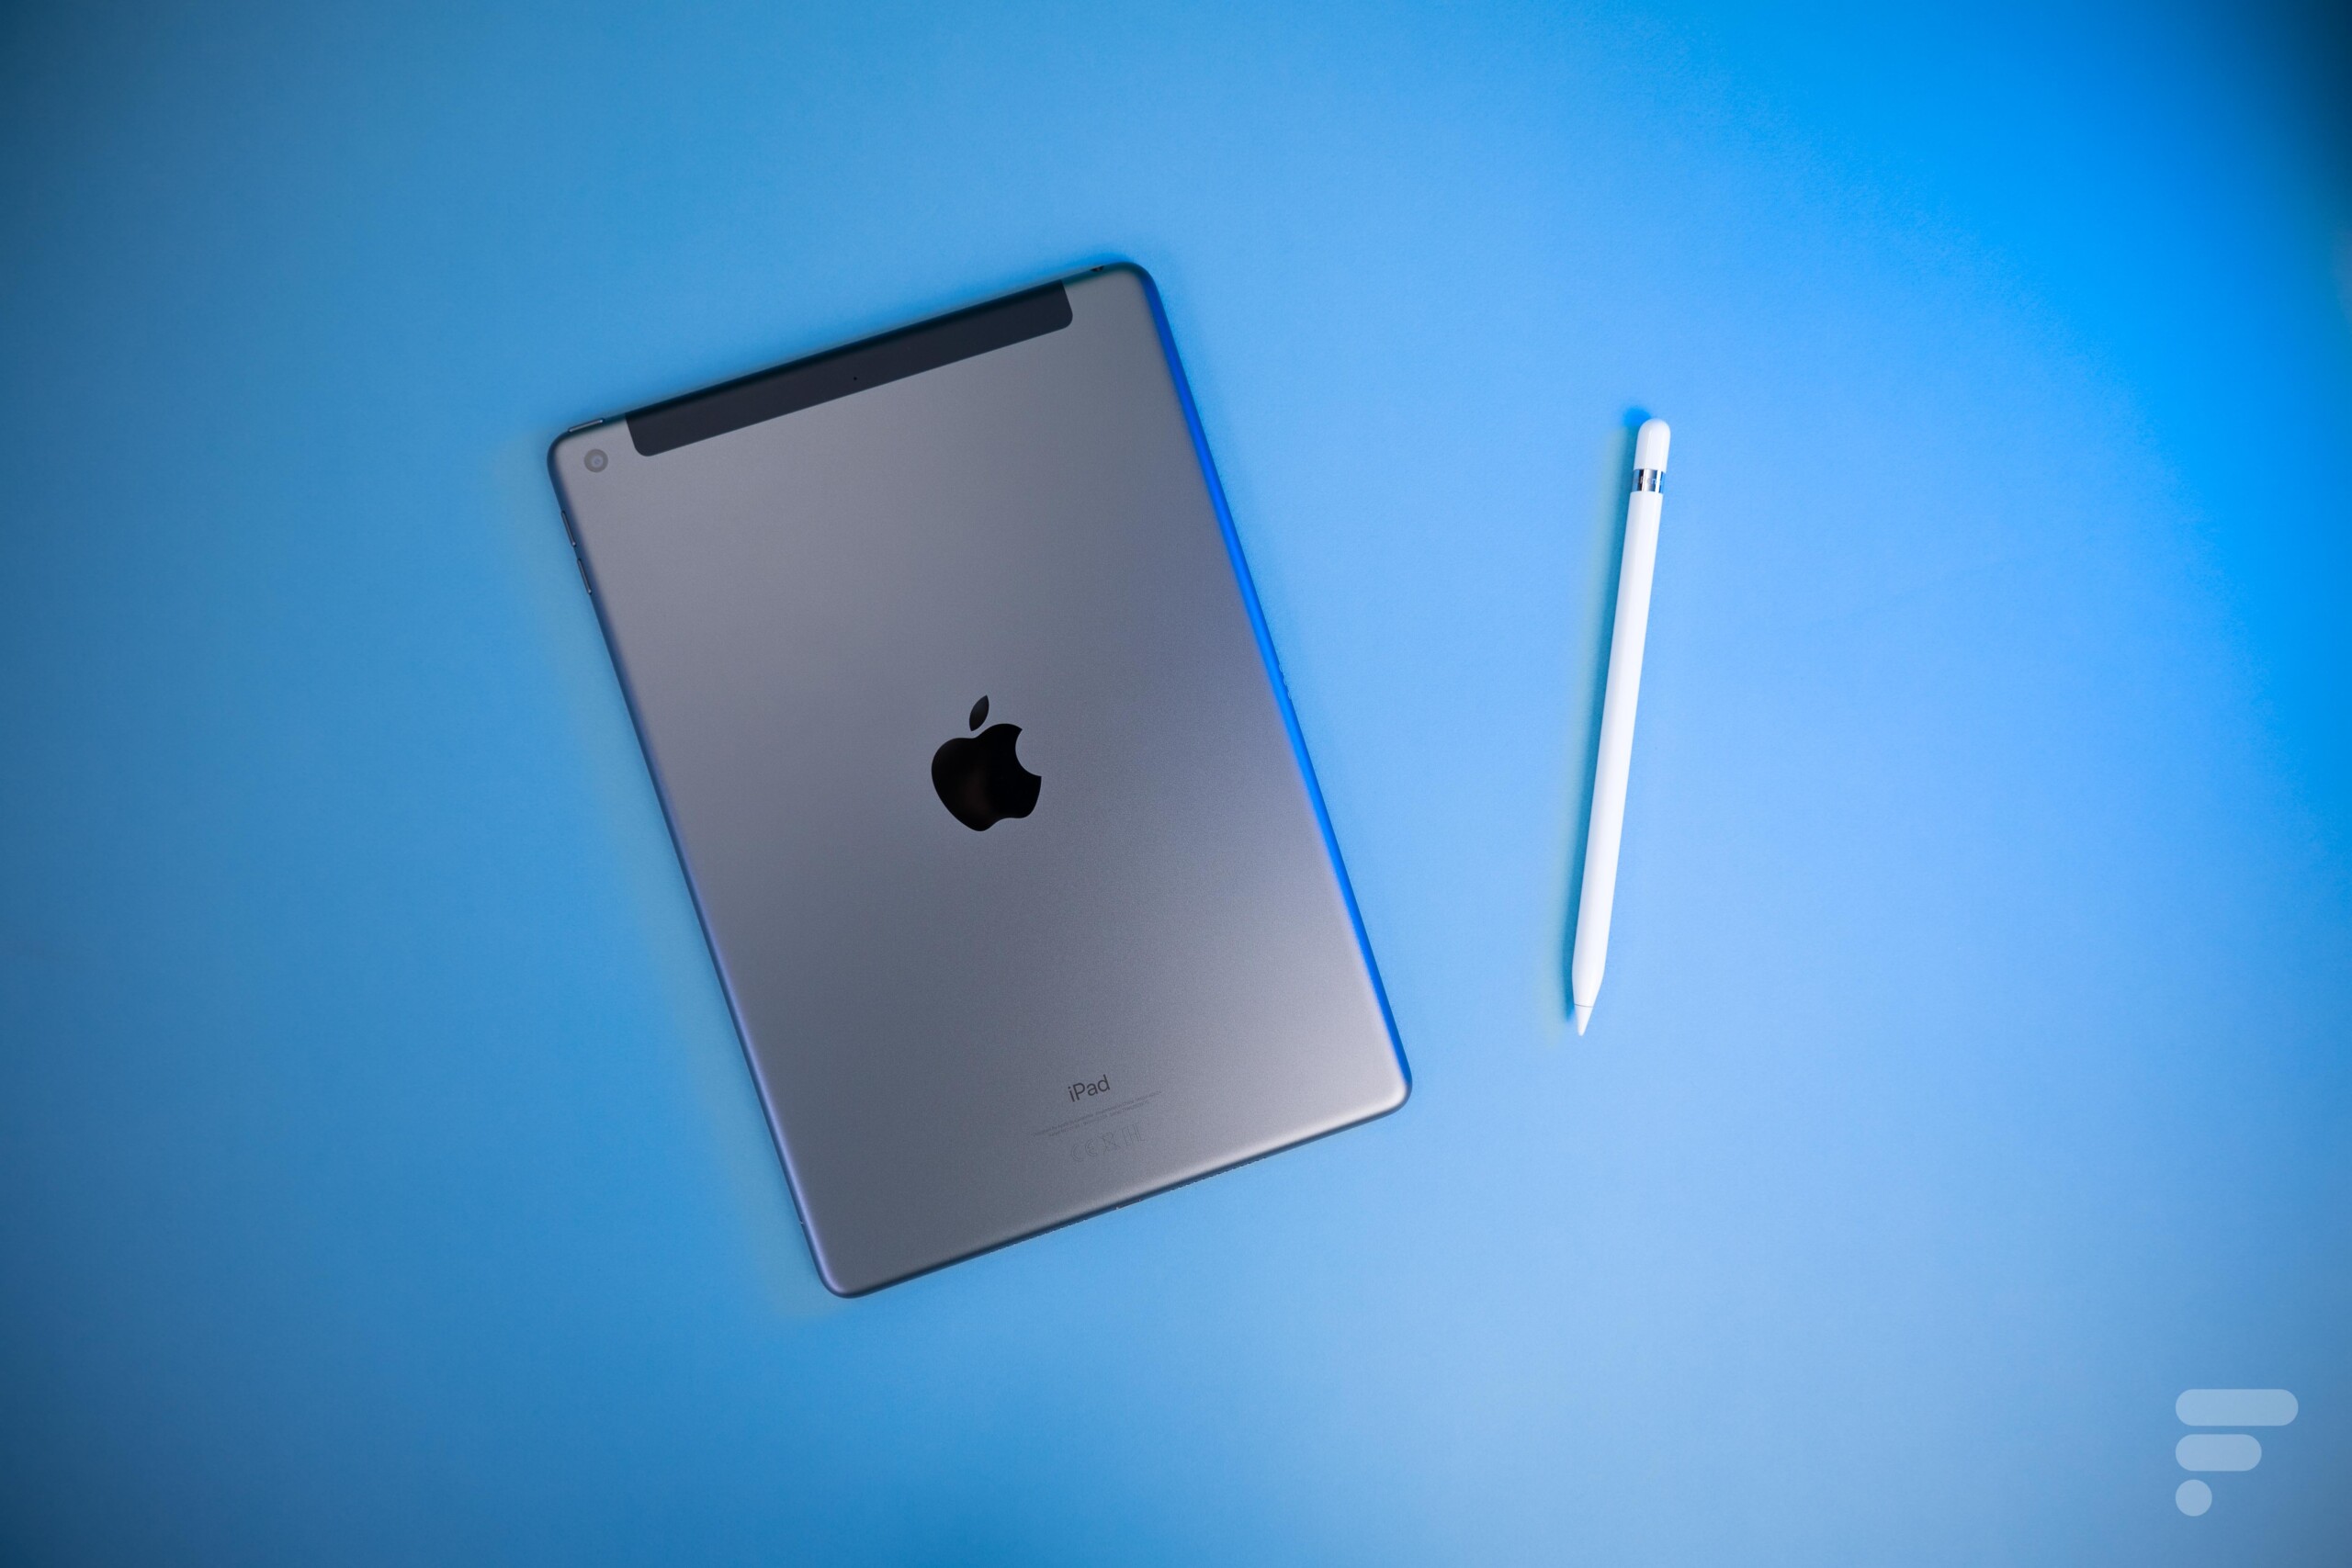 Acheter un modèle iPad 10,2 pouces Wi‑Fi 64 Go - Gris sidéral